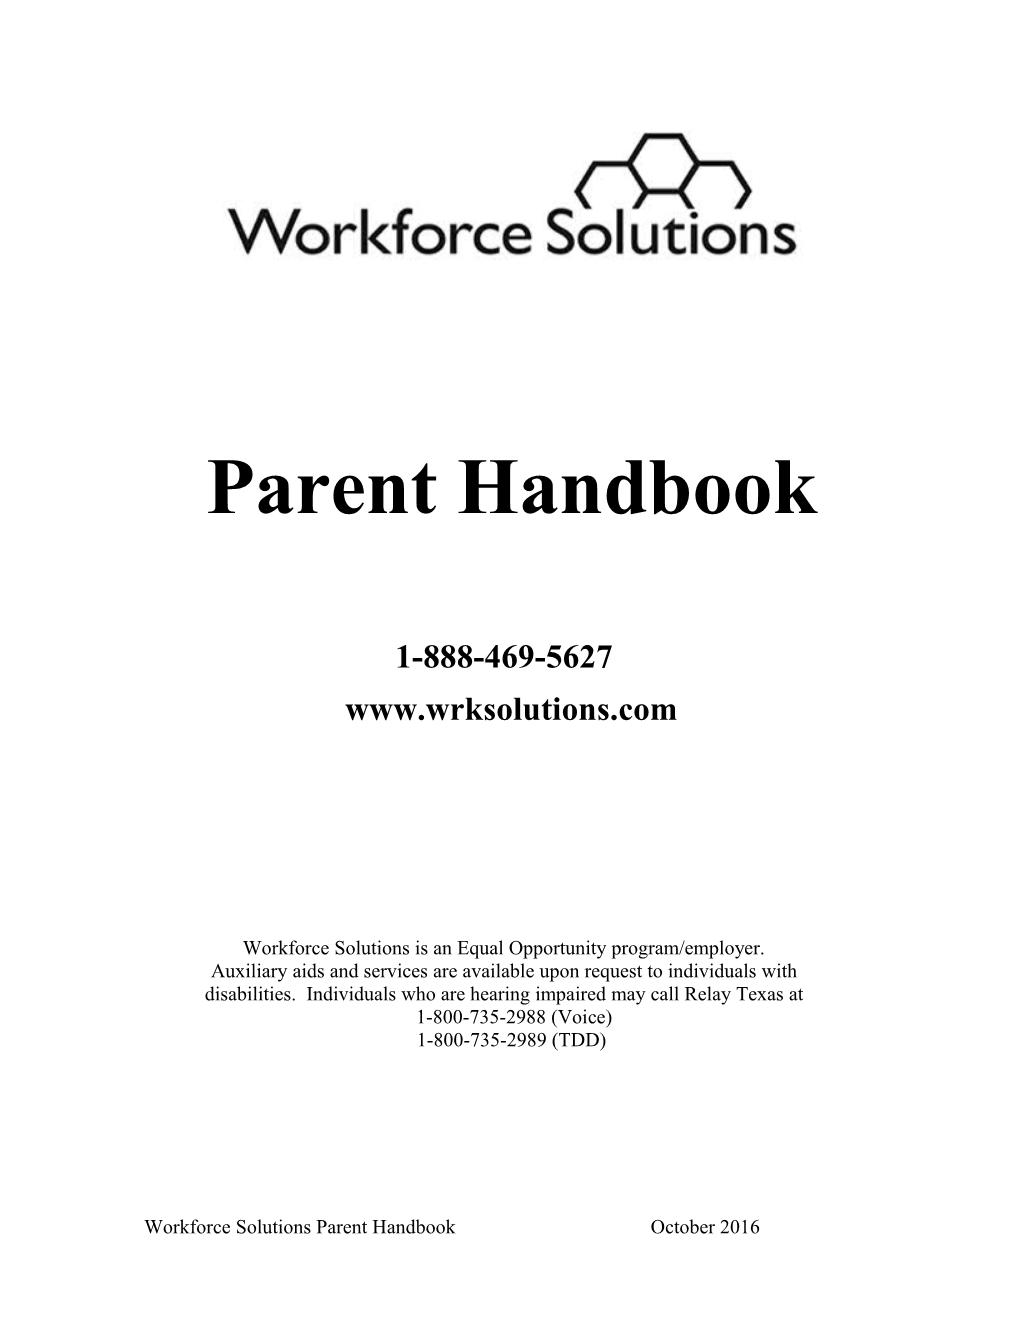 Workforce Solutions Parent Handbook October 2016